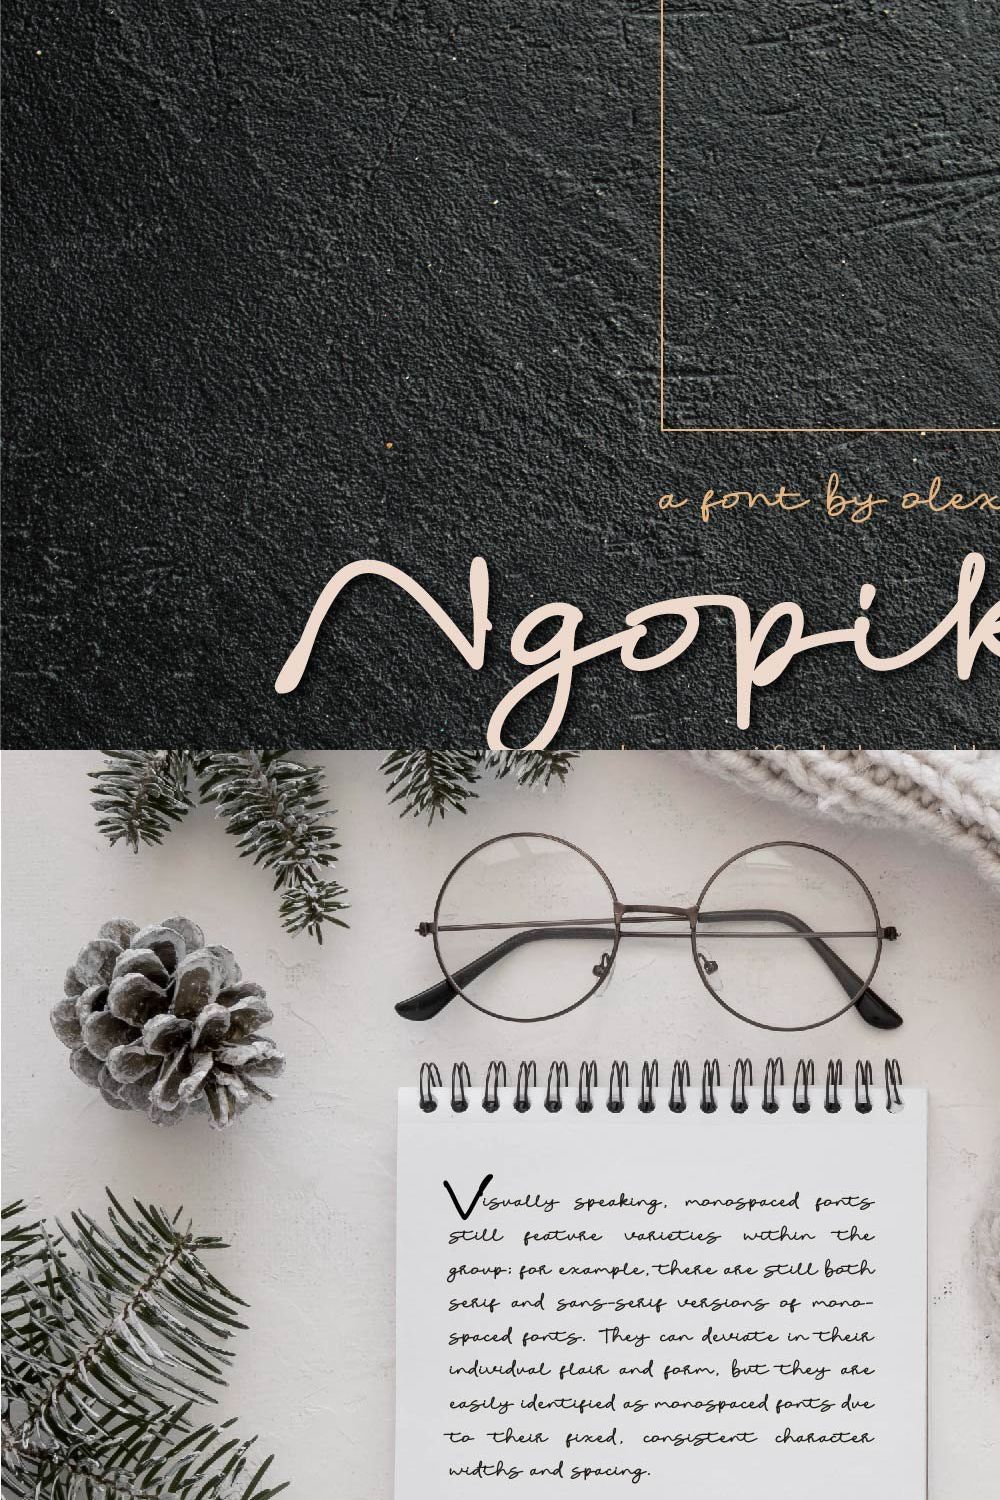 Ngopikita - Handlettered font pinterest preview image.